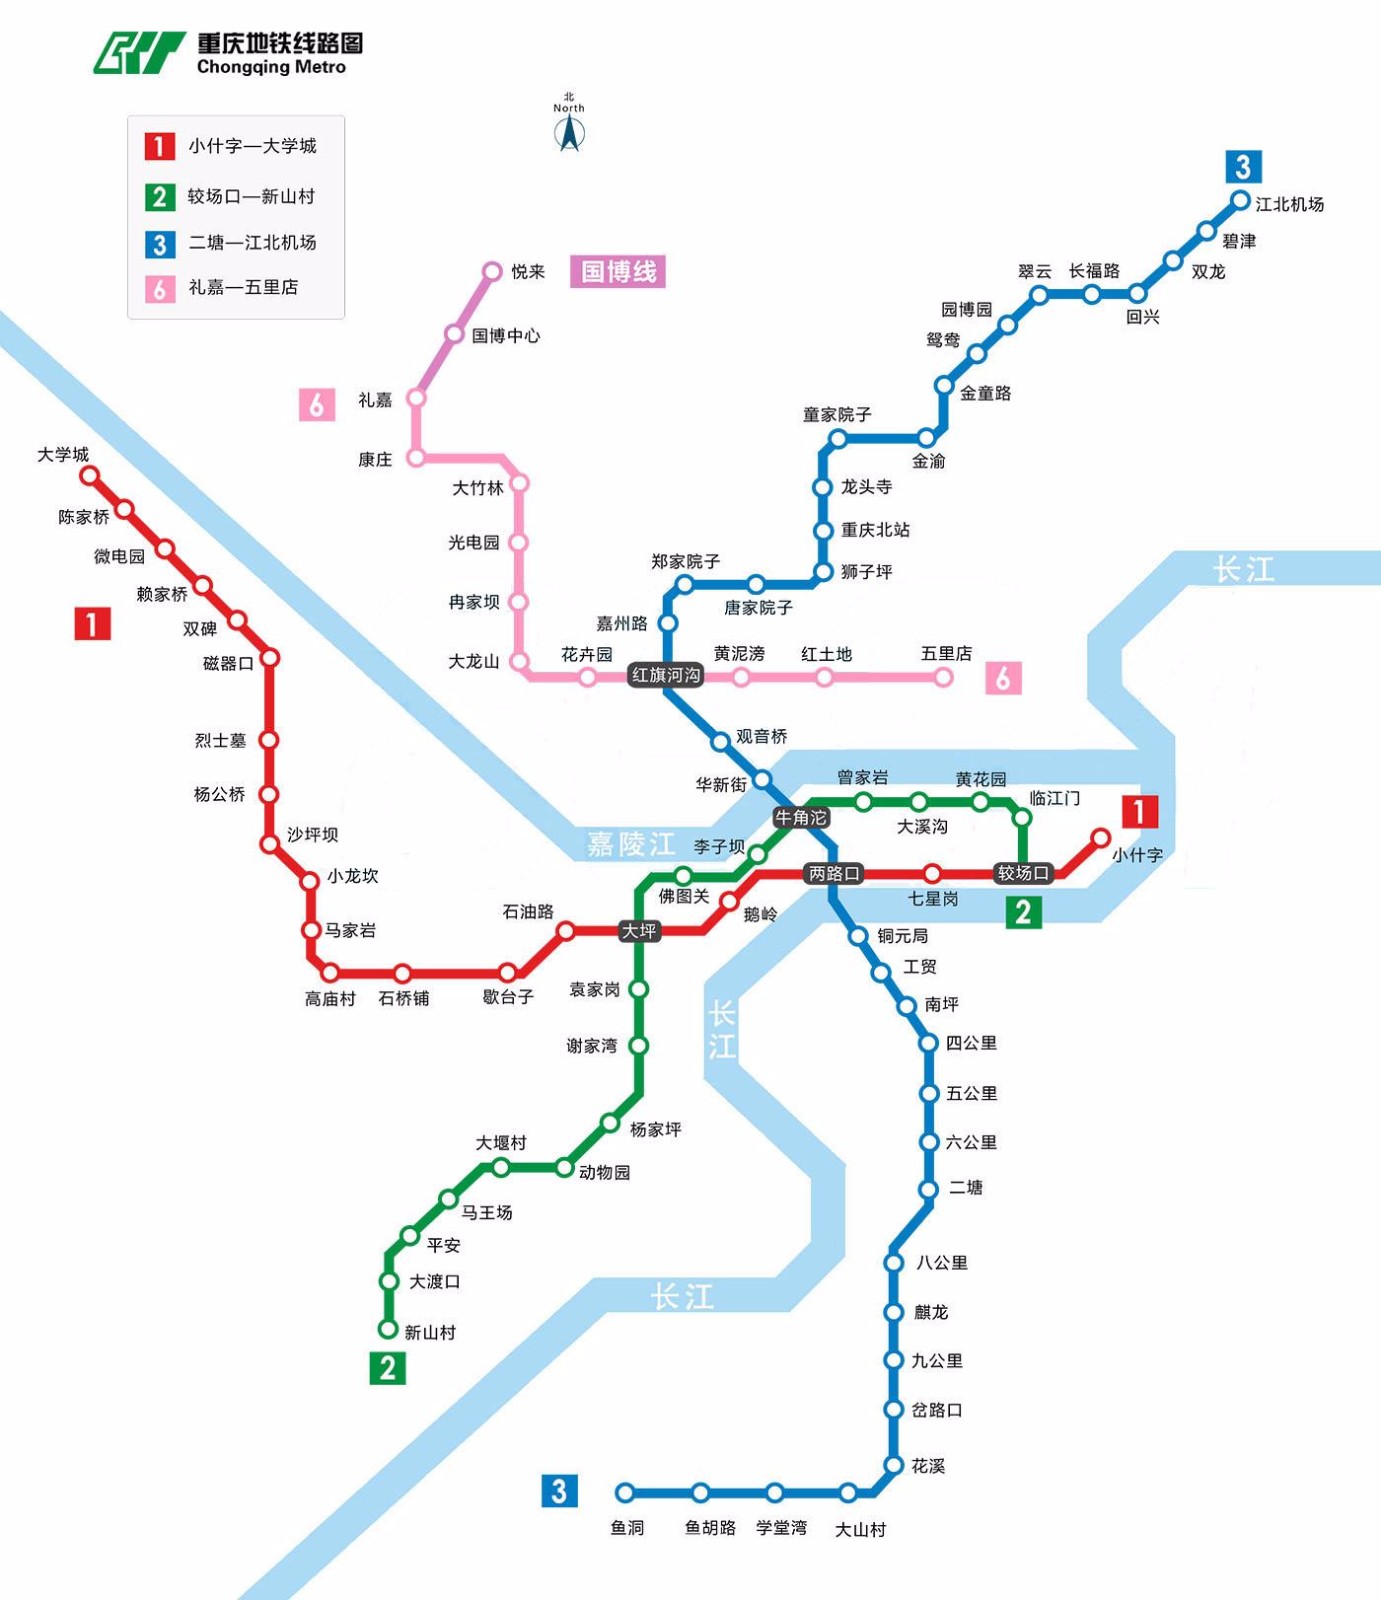 想去重庆玩先规划路线想知道最新的重庆轻轨图（重庆规划地铁线路图最新版）